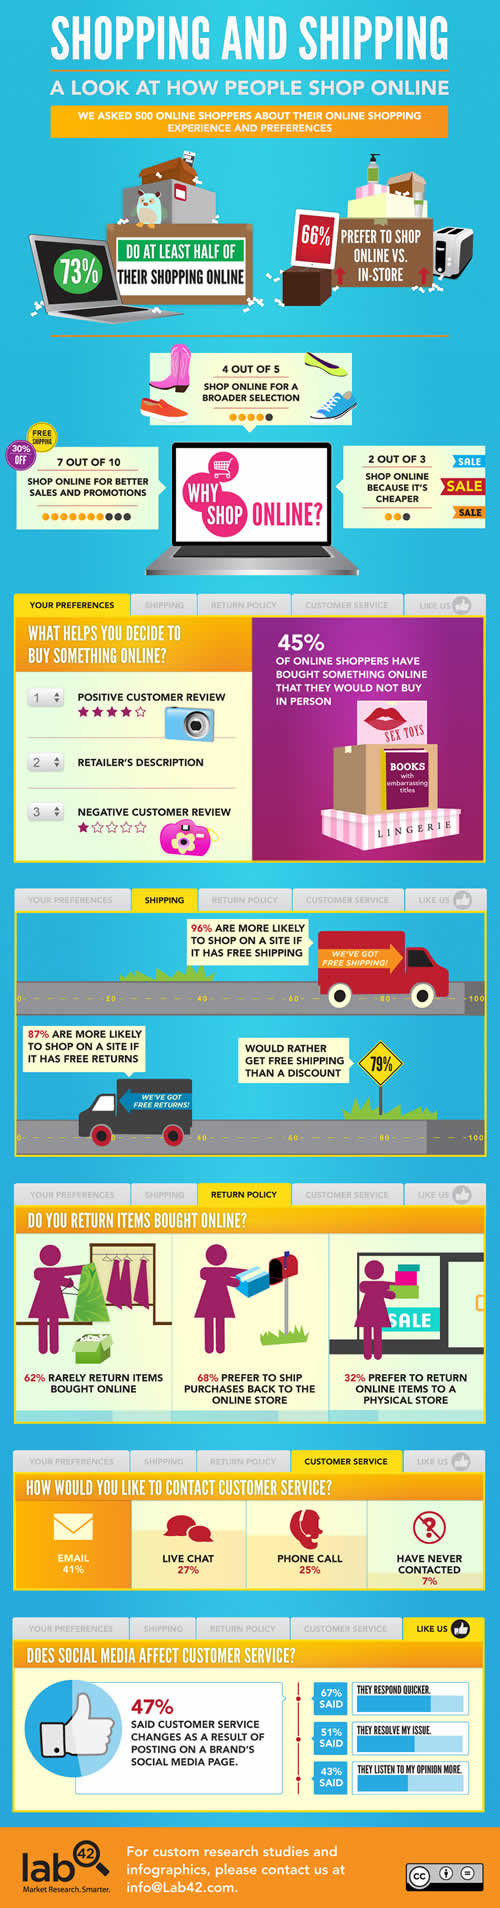 Online-Shopping-Infographic_1-2012-08-27-22-09.jpg